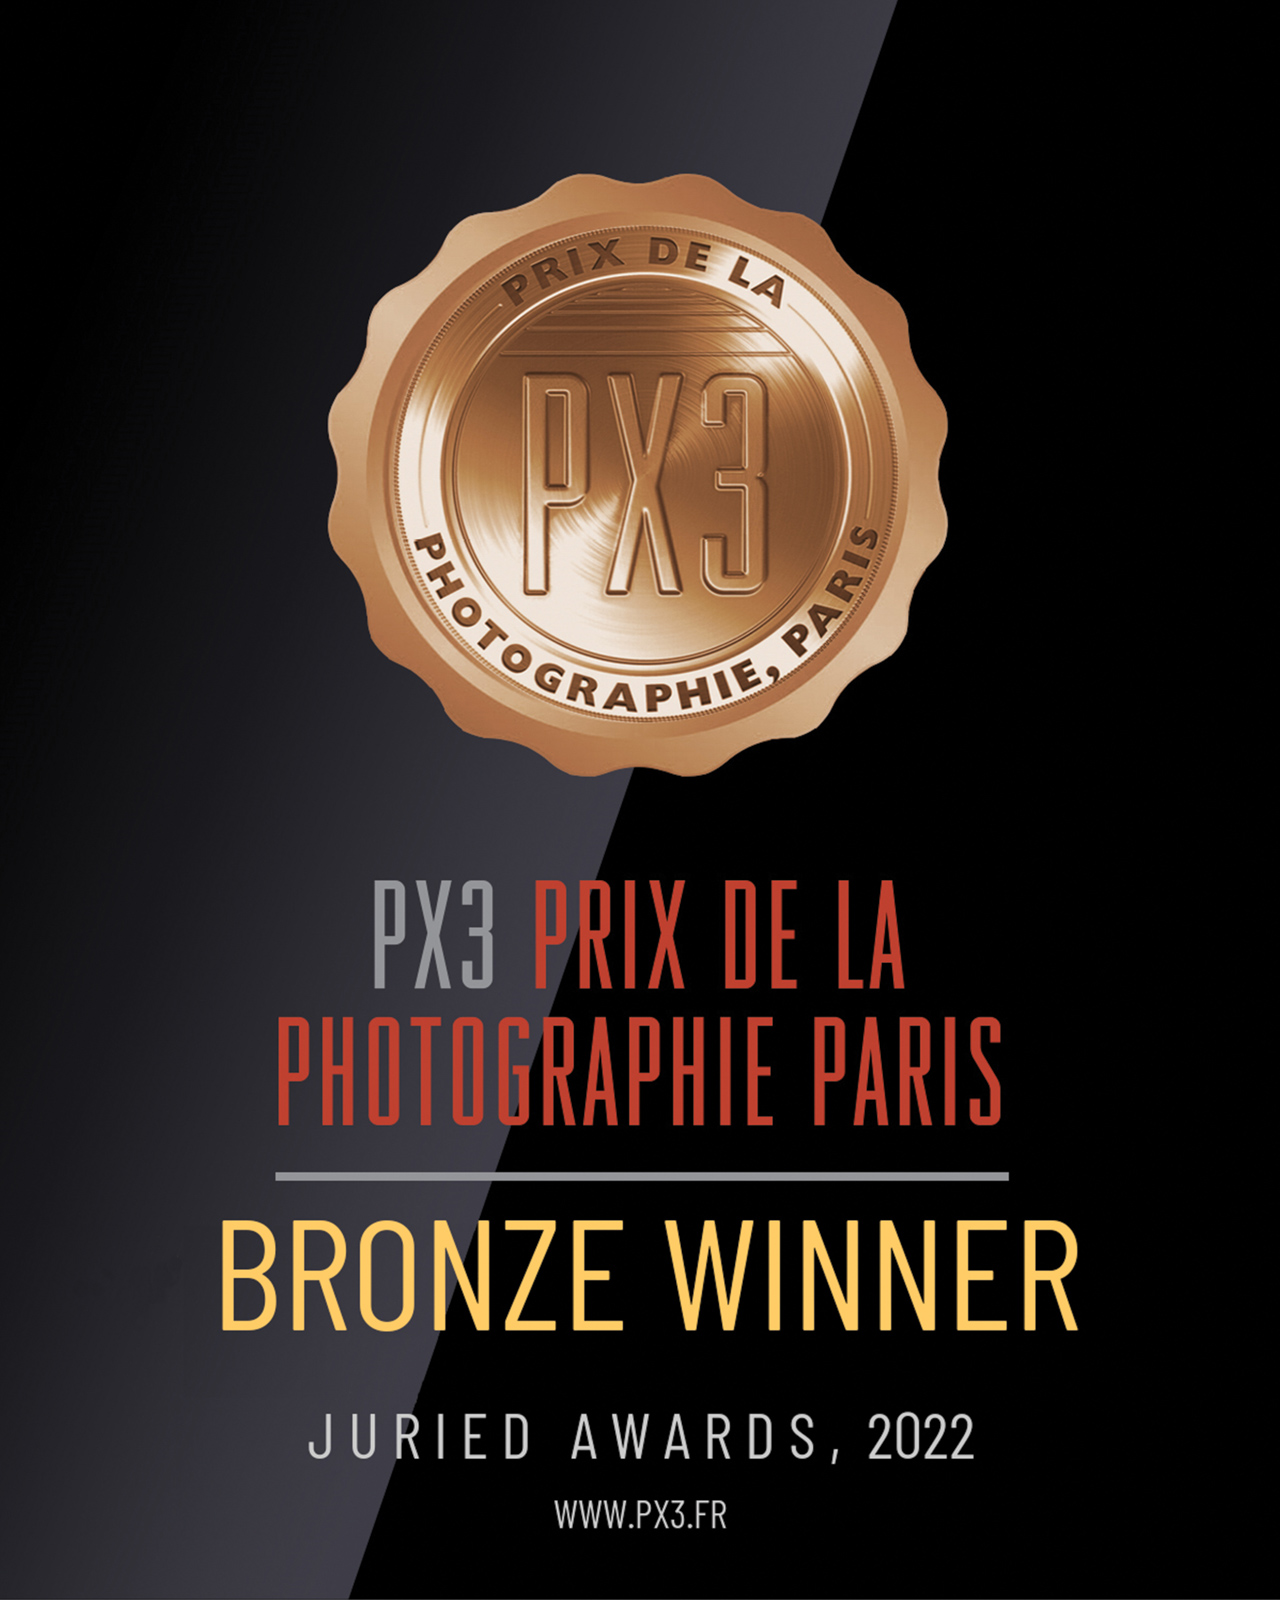 2022 PX3 Prix de la Photographie Paris 法國巴黎PX3 國際攝影獎 — 職業組銅獎🥉